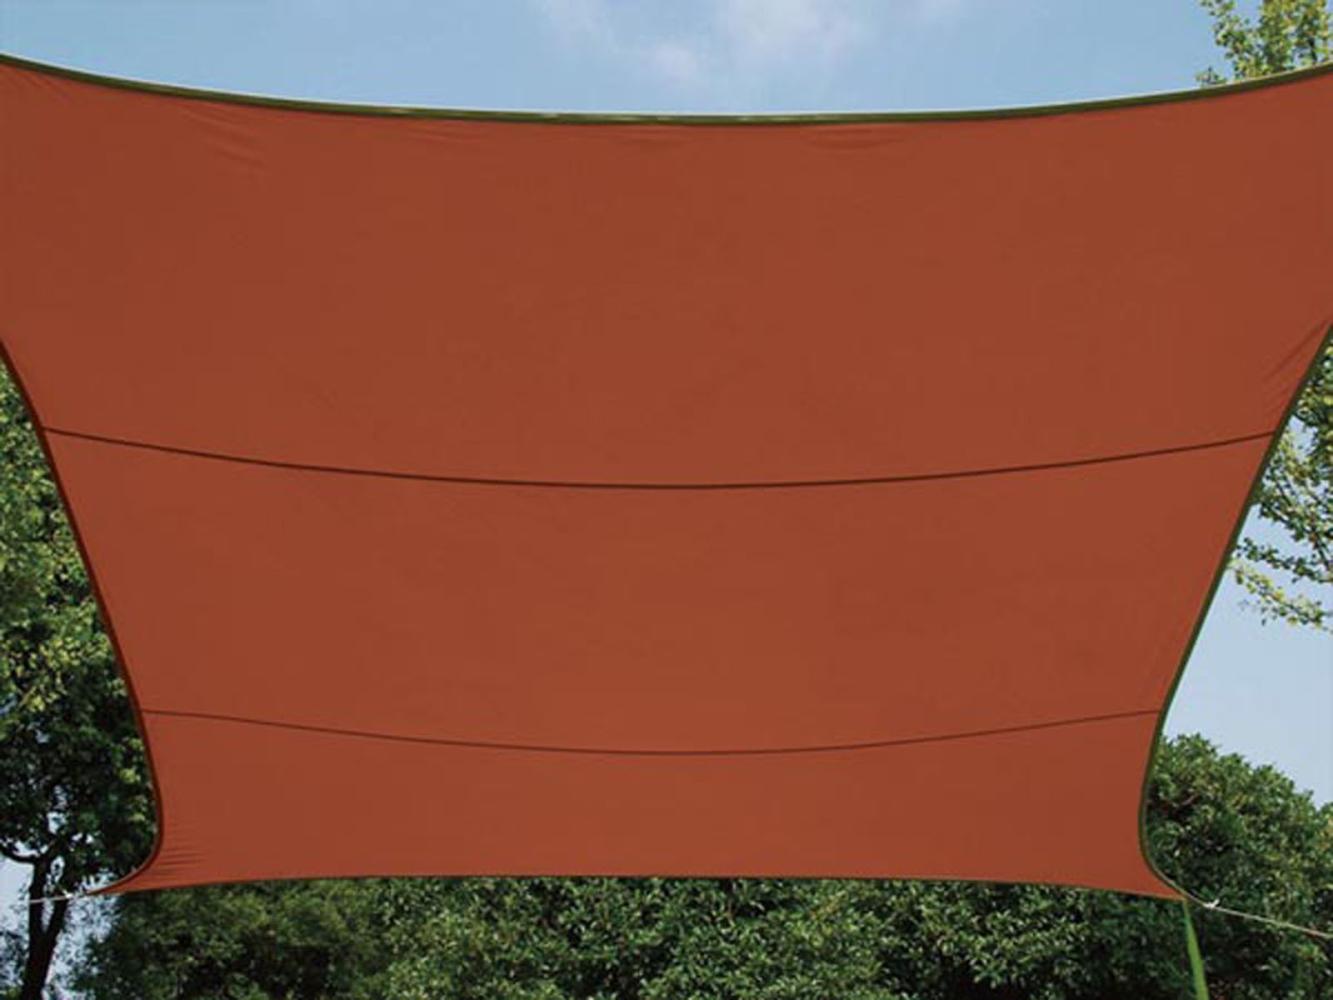 Sonnensegel Rechteckig 4x3m Terracotta - Sonnenschutzsegel für Balkon Bild 1